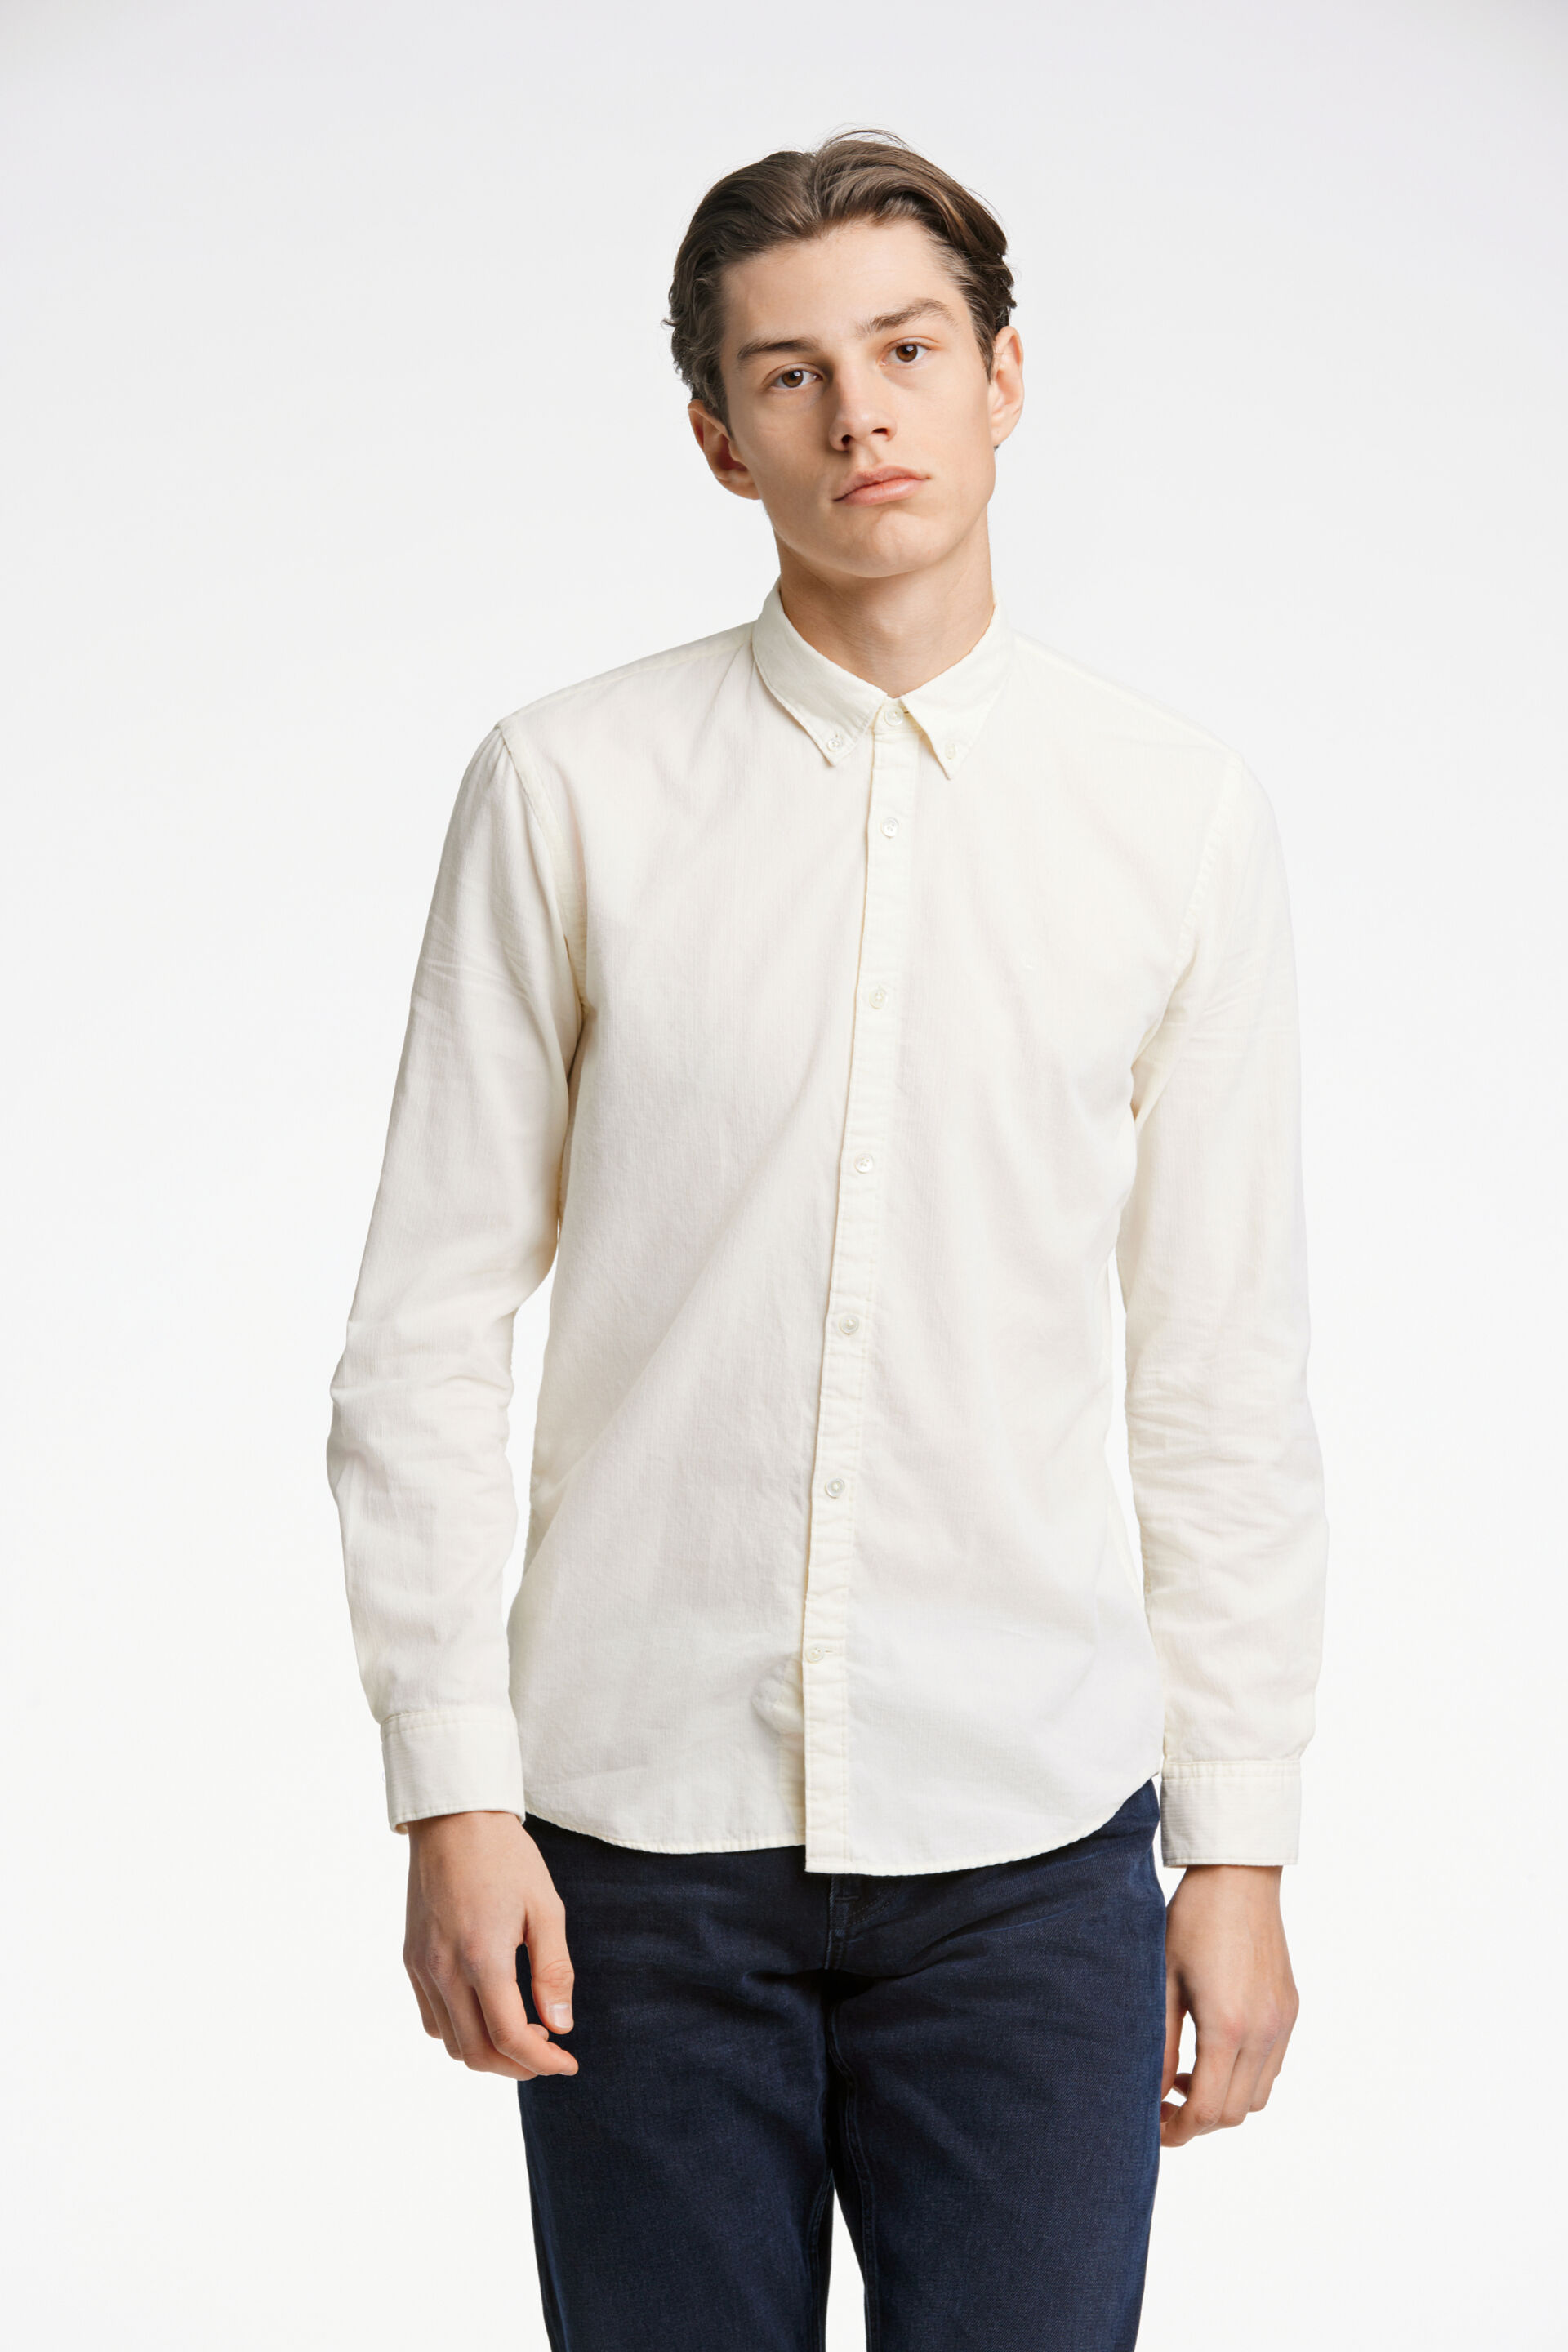 Fløjlsskjorte Fløjlsskjorte Hvid 60-205016